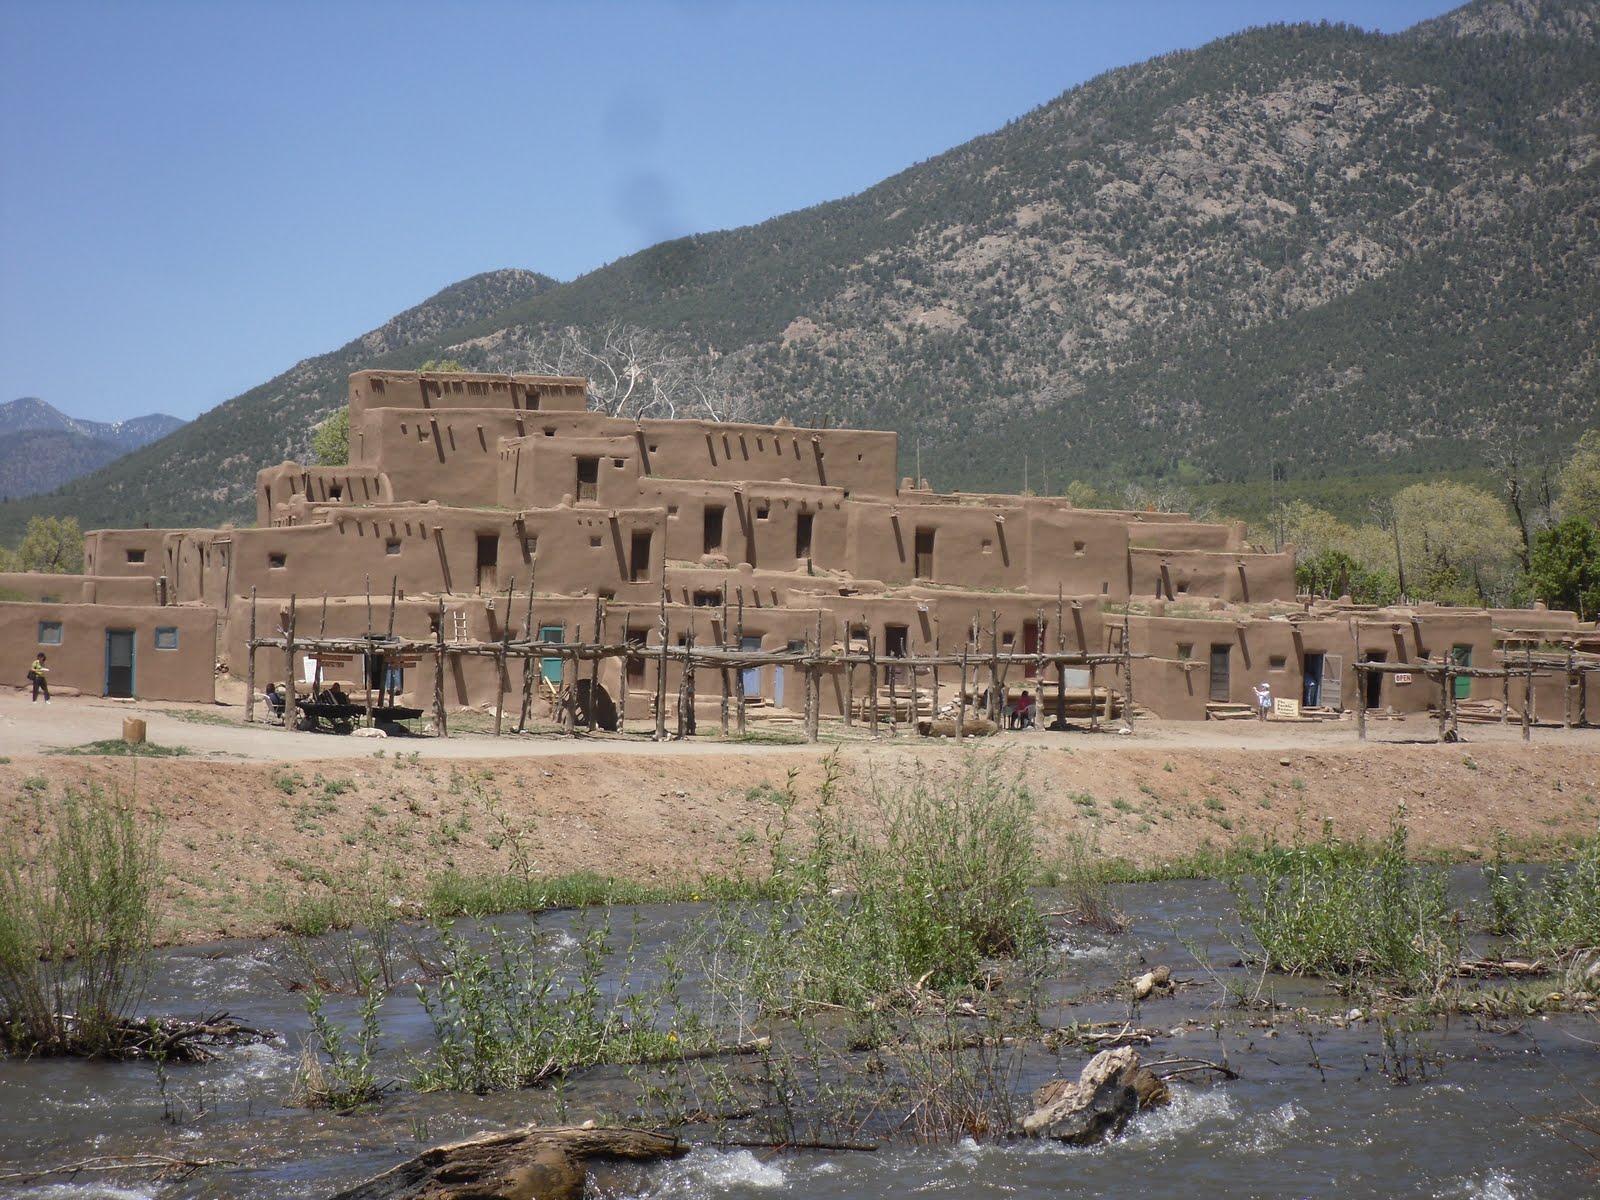 Scott's Twisted Travels: Taos Pueblo